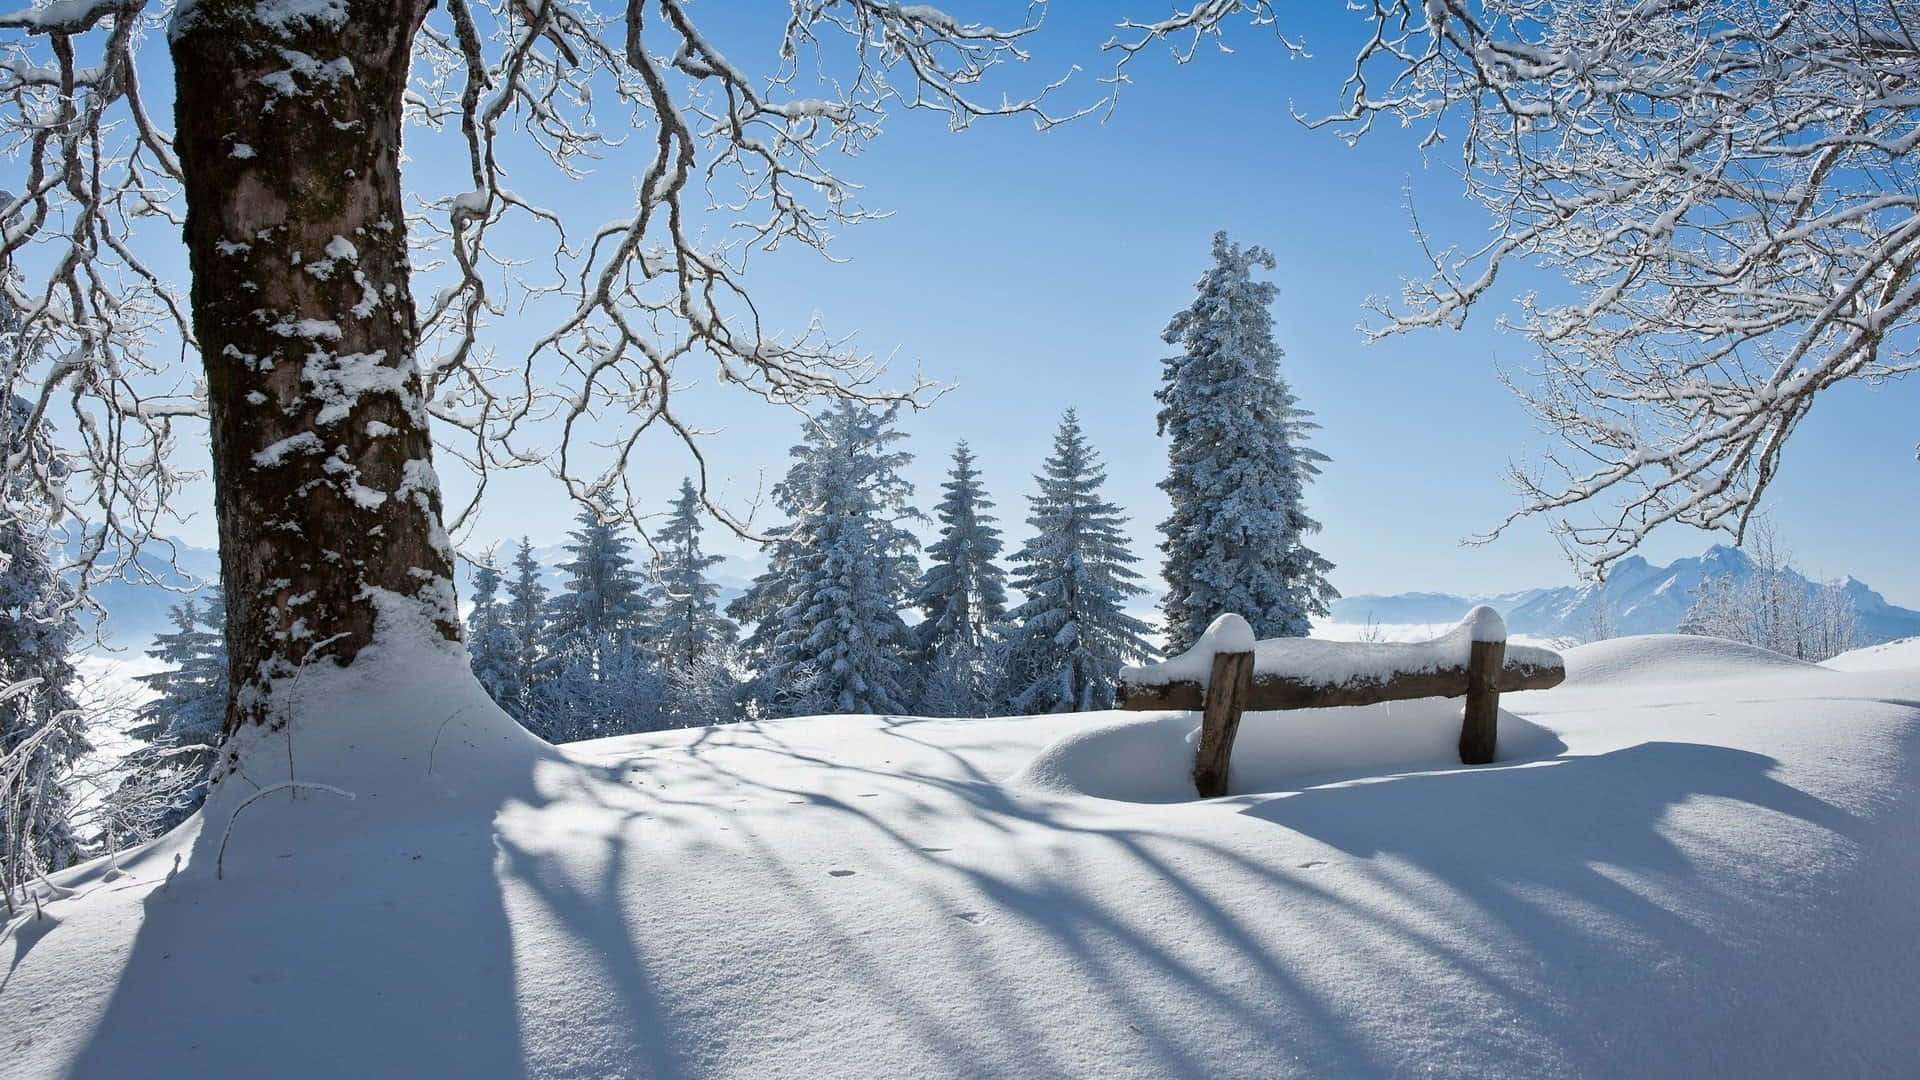 Enjoy the seasonal beauty of Winter!